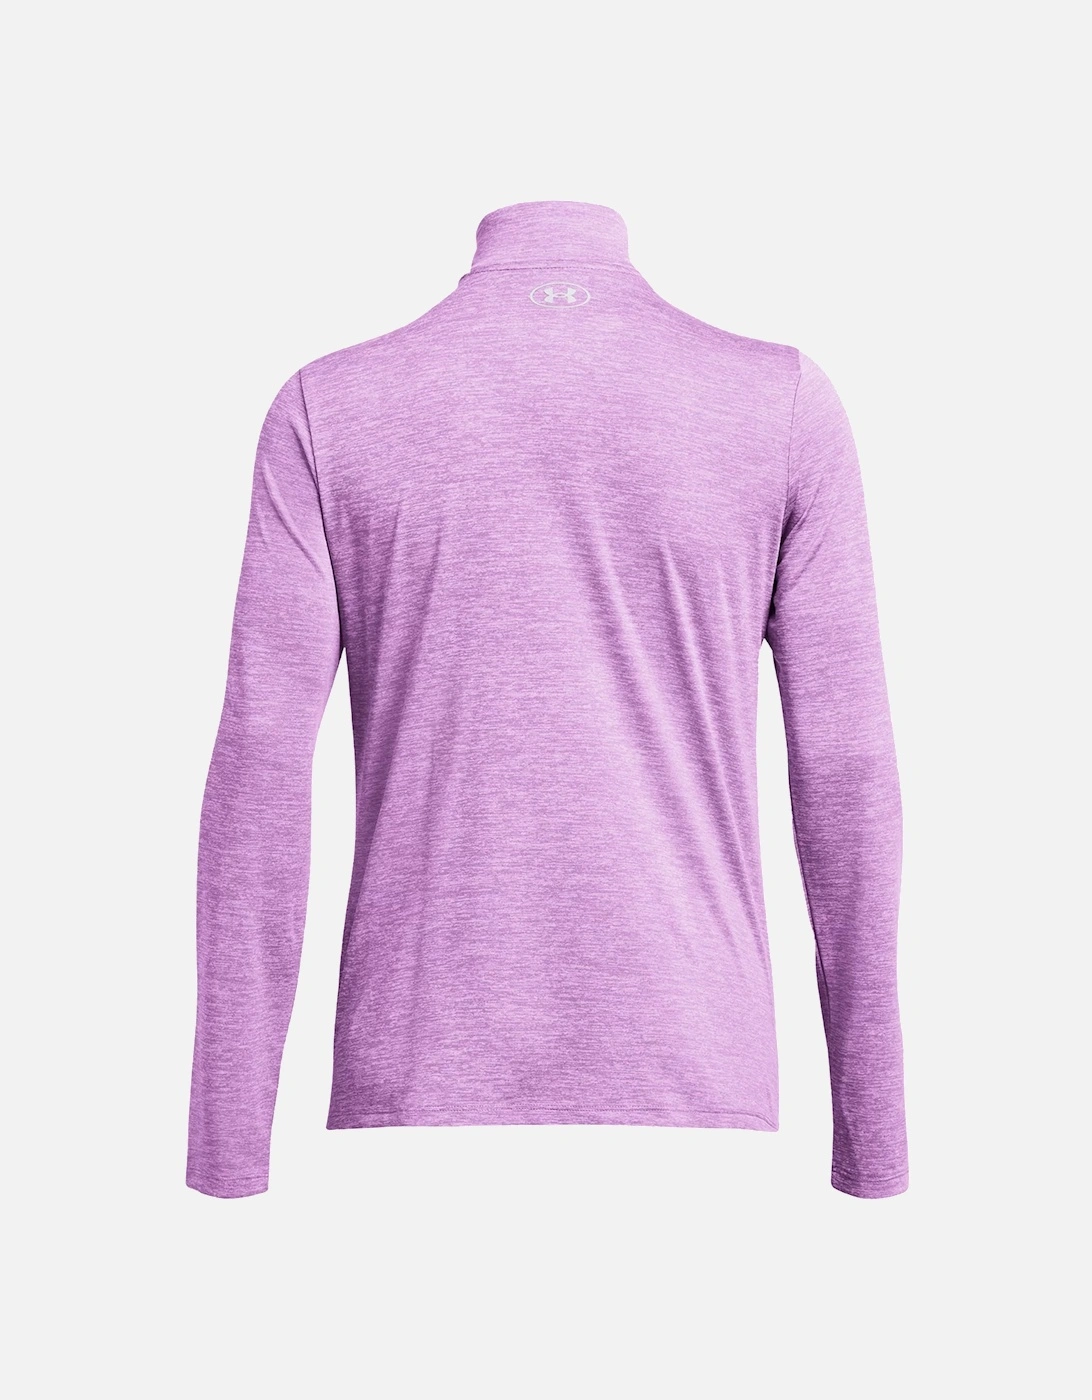 Womens 1/2 Zip Tech Twist T-Shirt (Purple)